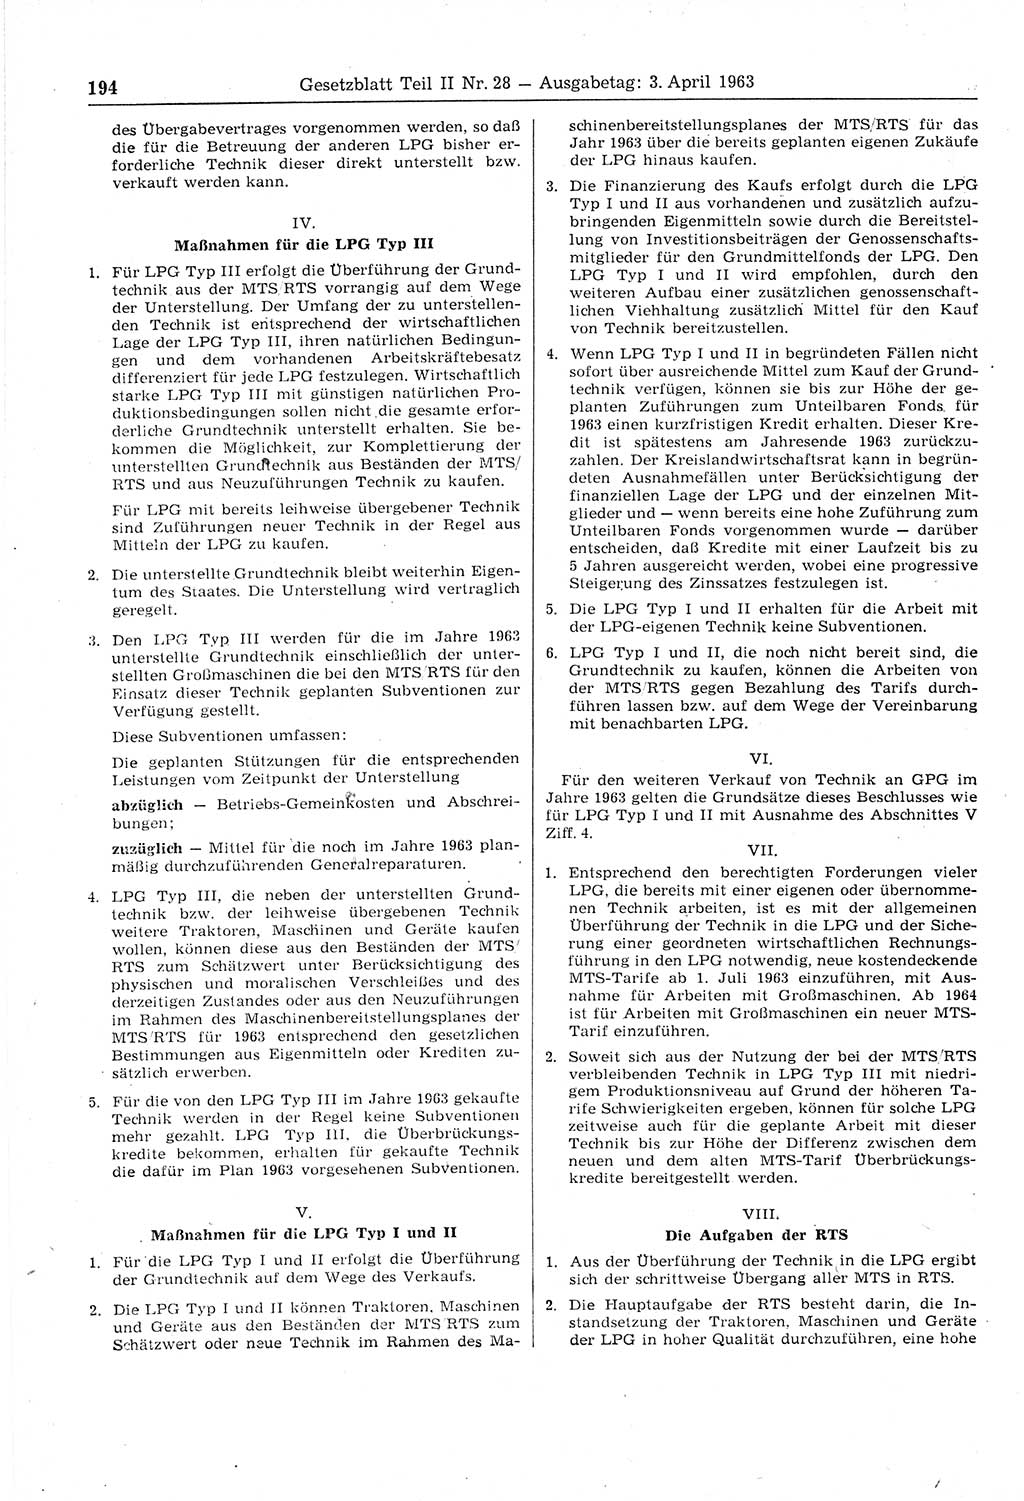 Gesetzblatt (GBl.) der Deutschen Demokratischen Republik (DDR) Teil ⅠⅠ 1963, Seite 194 (GBl. DDR ⅠⅠ 1963, S. 194)